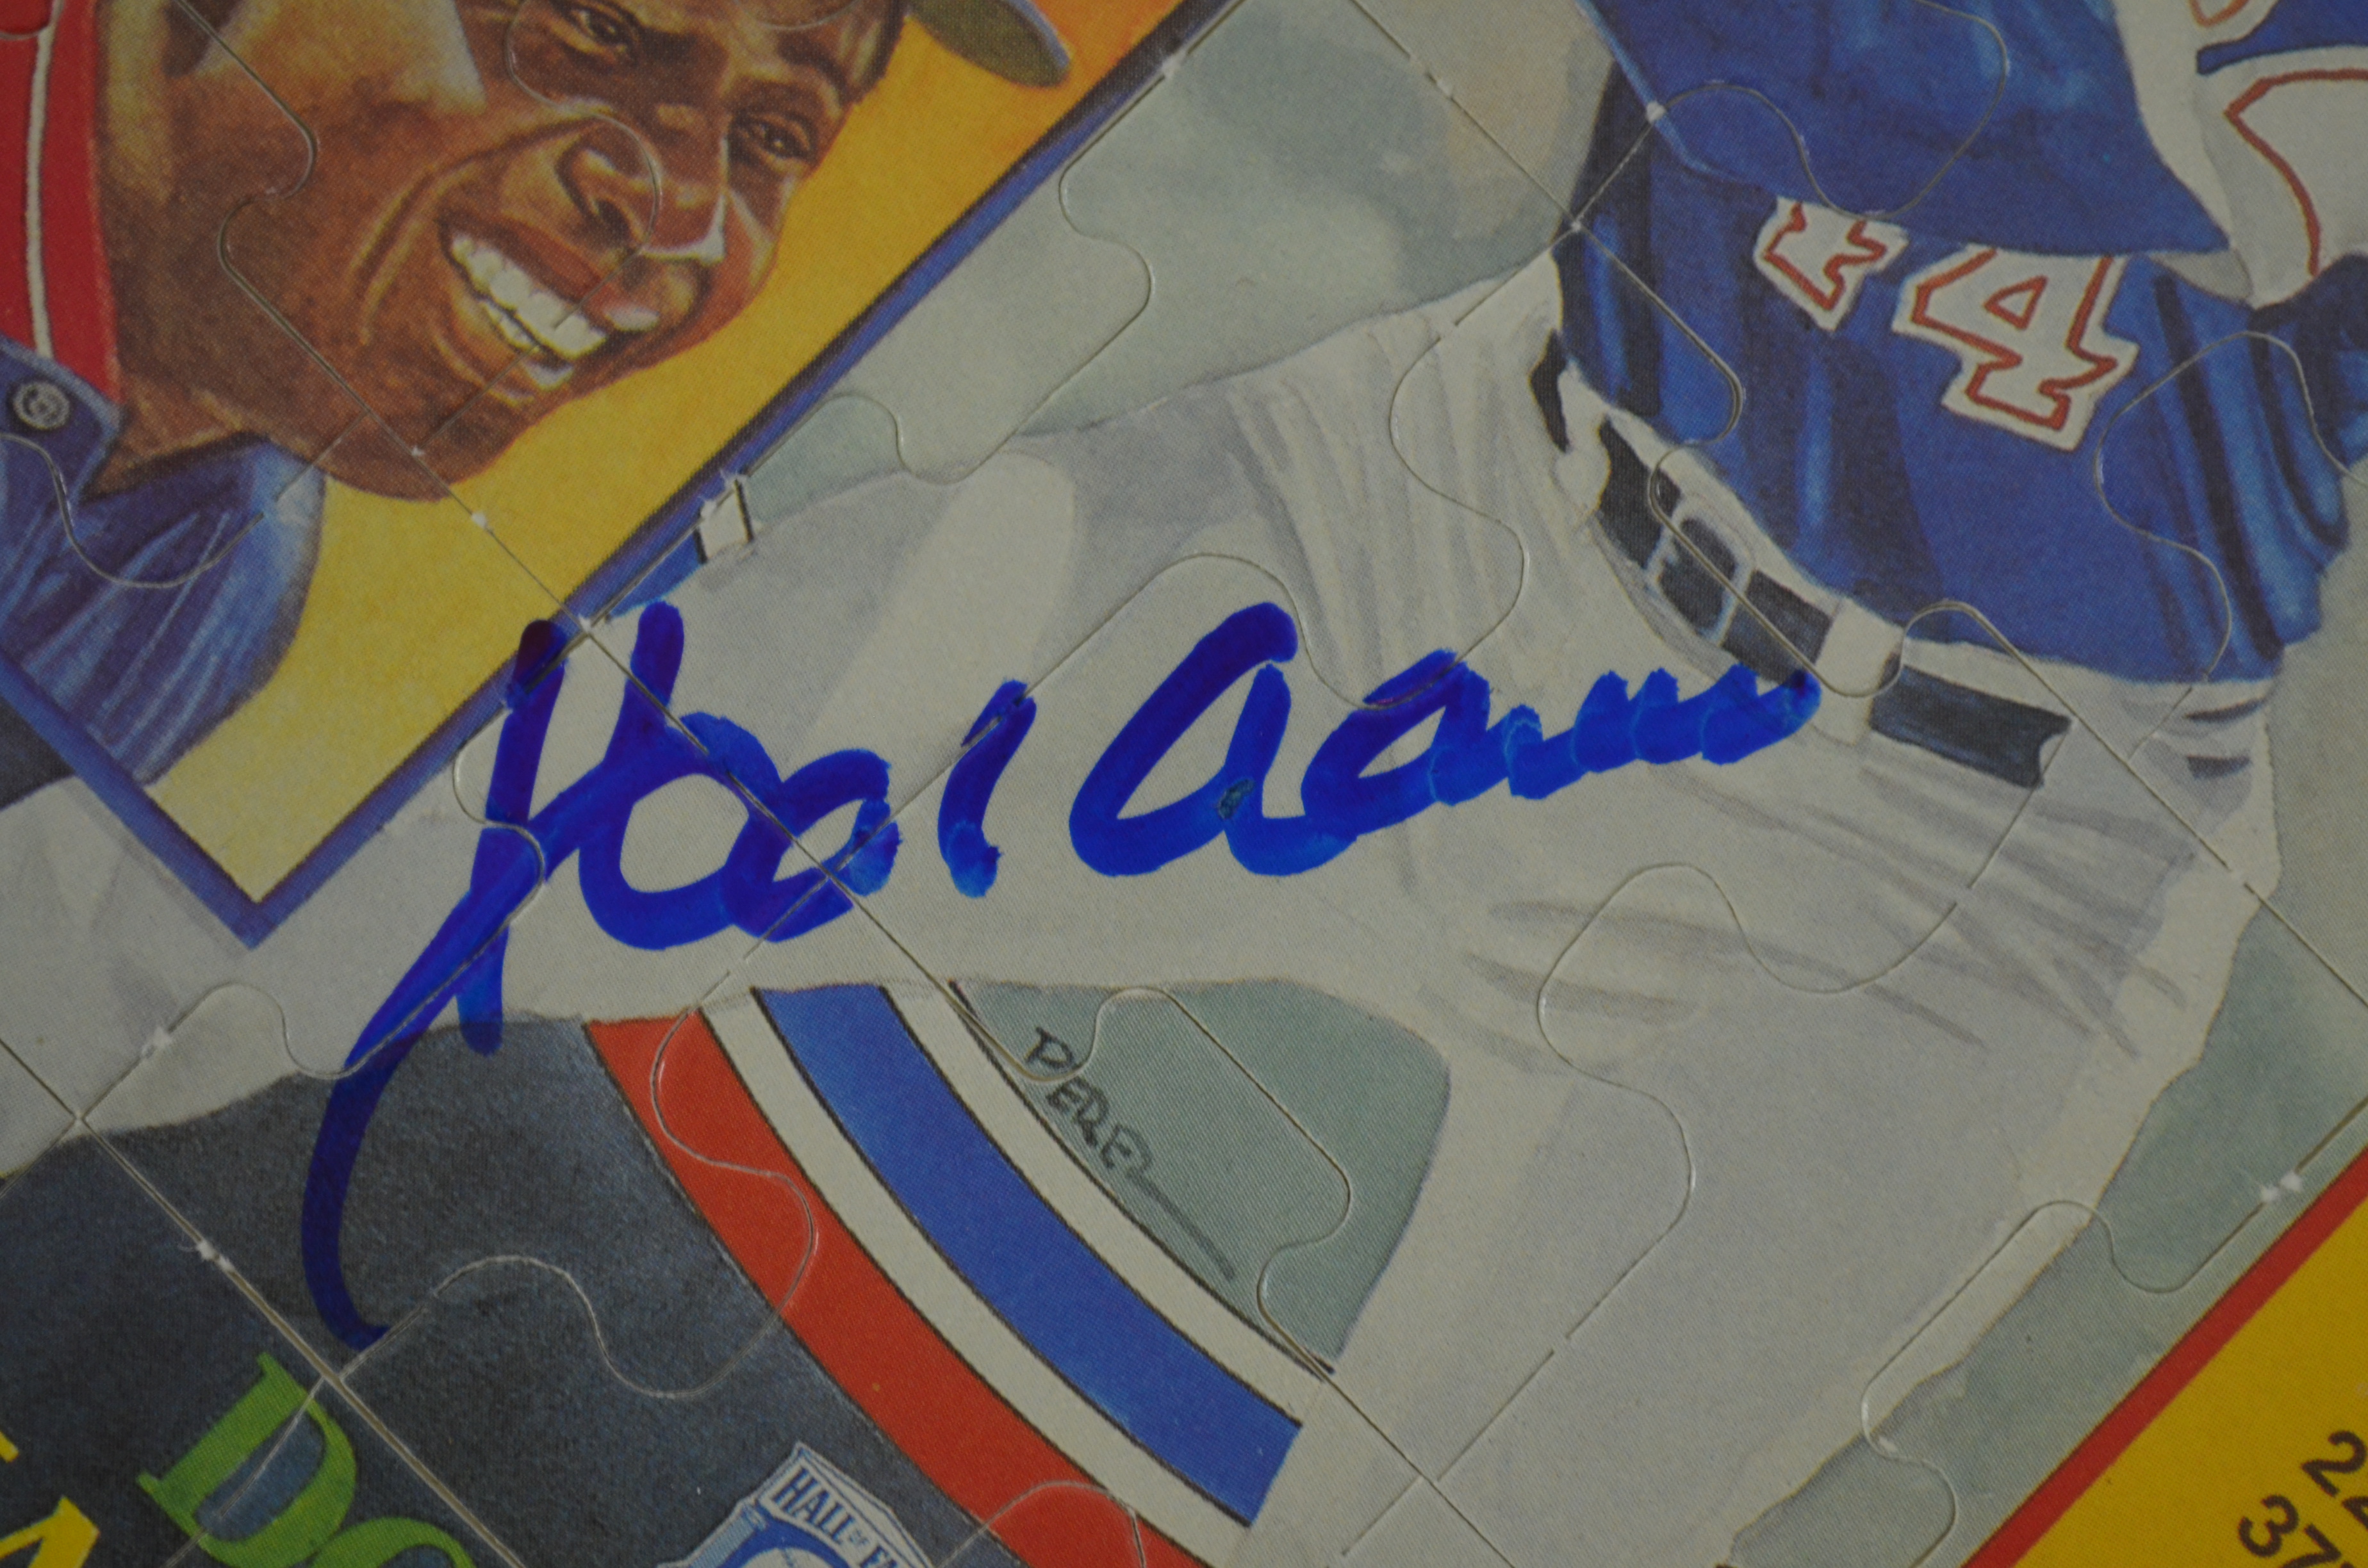  Hank Aaron Hall Of Fame Diamond King Baseball Card